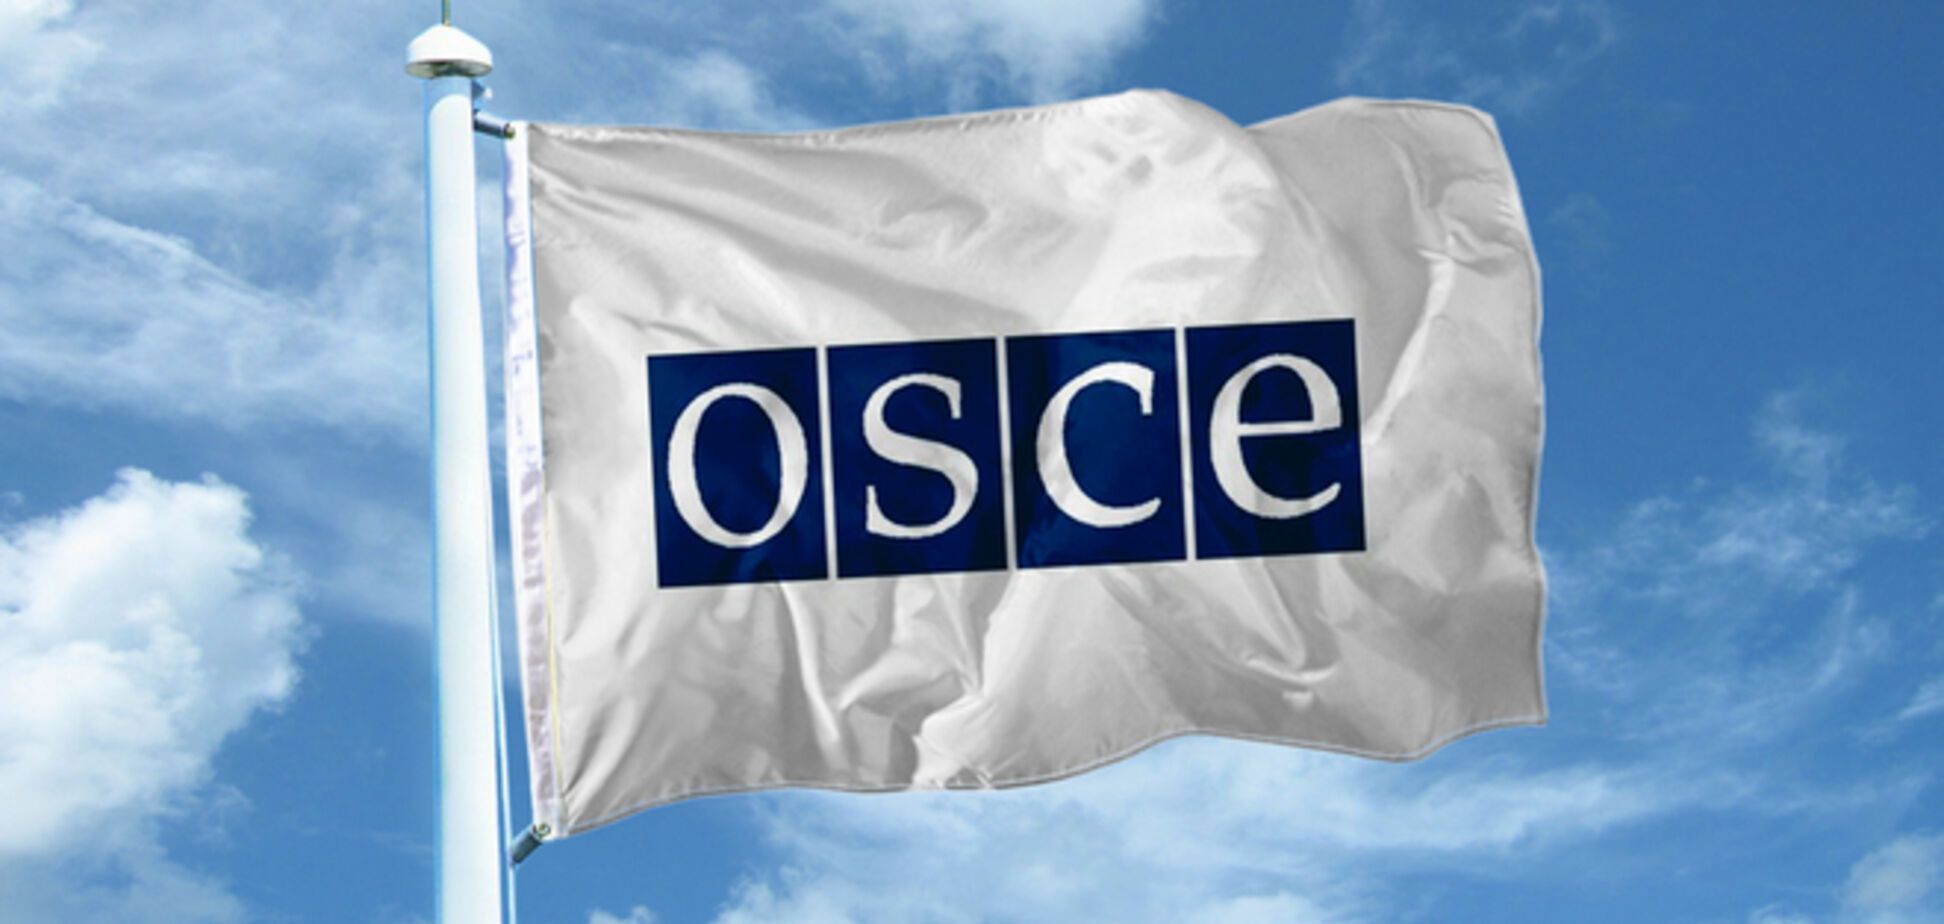 ОБСЄ скликала екстрене засідання щодо ситуації в Україні